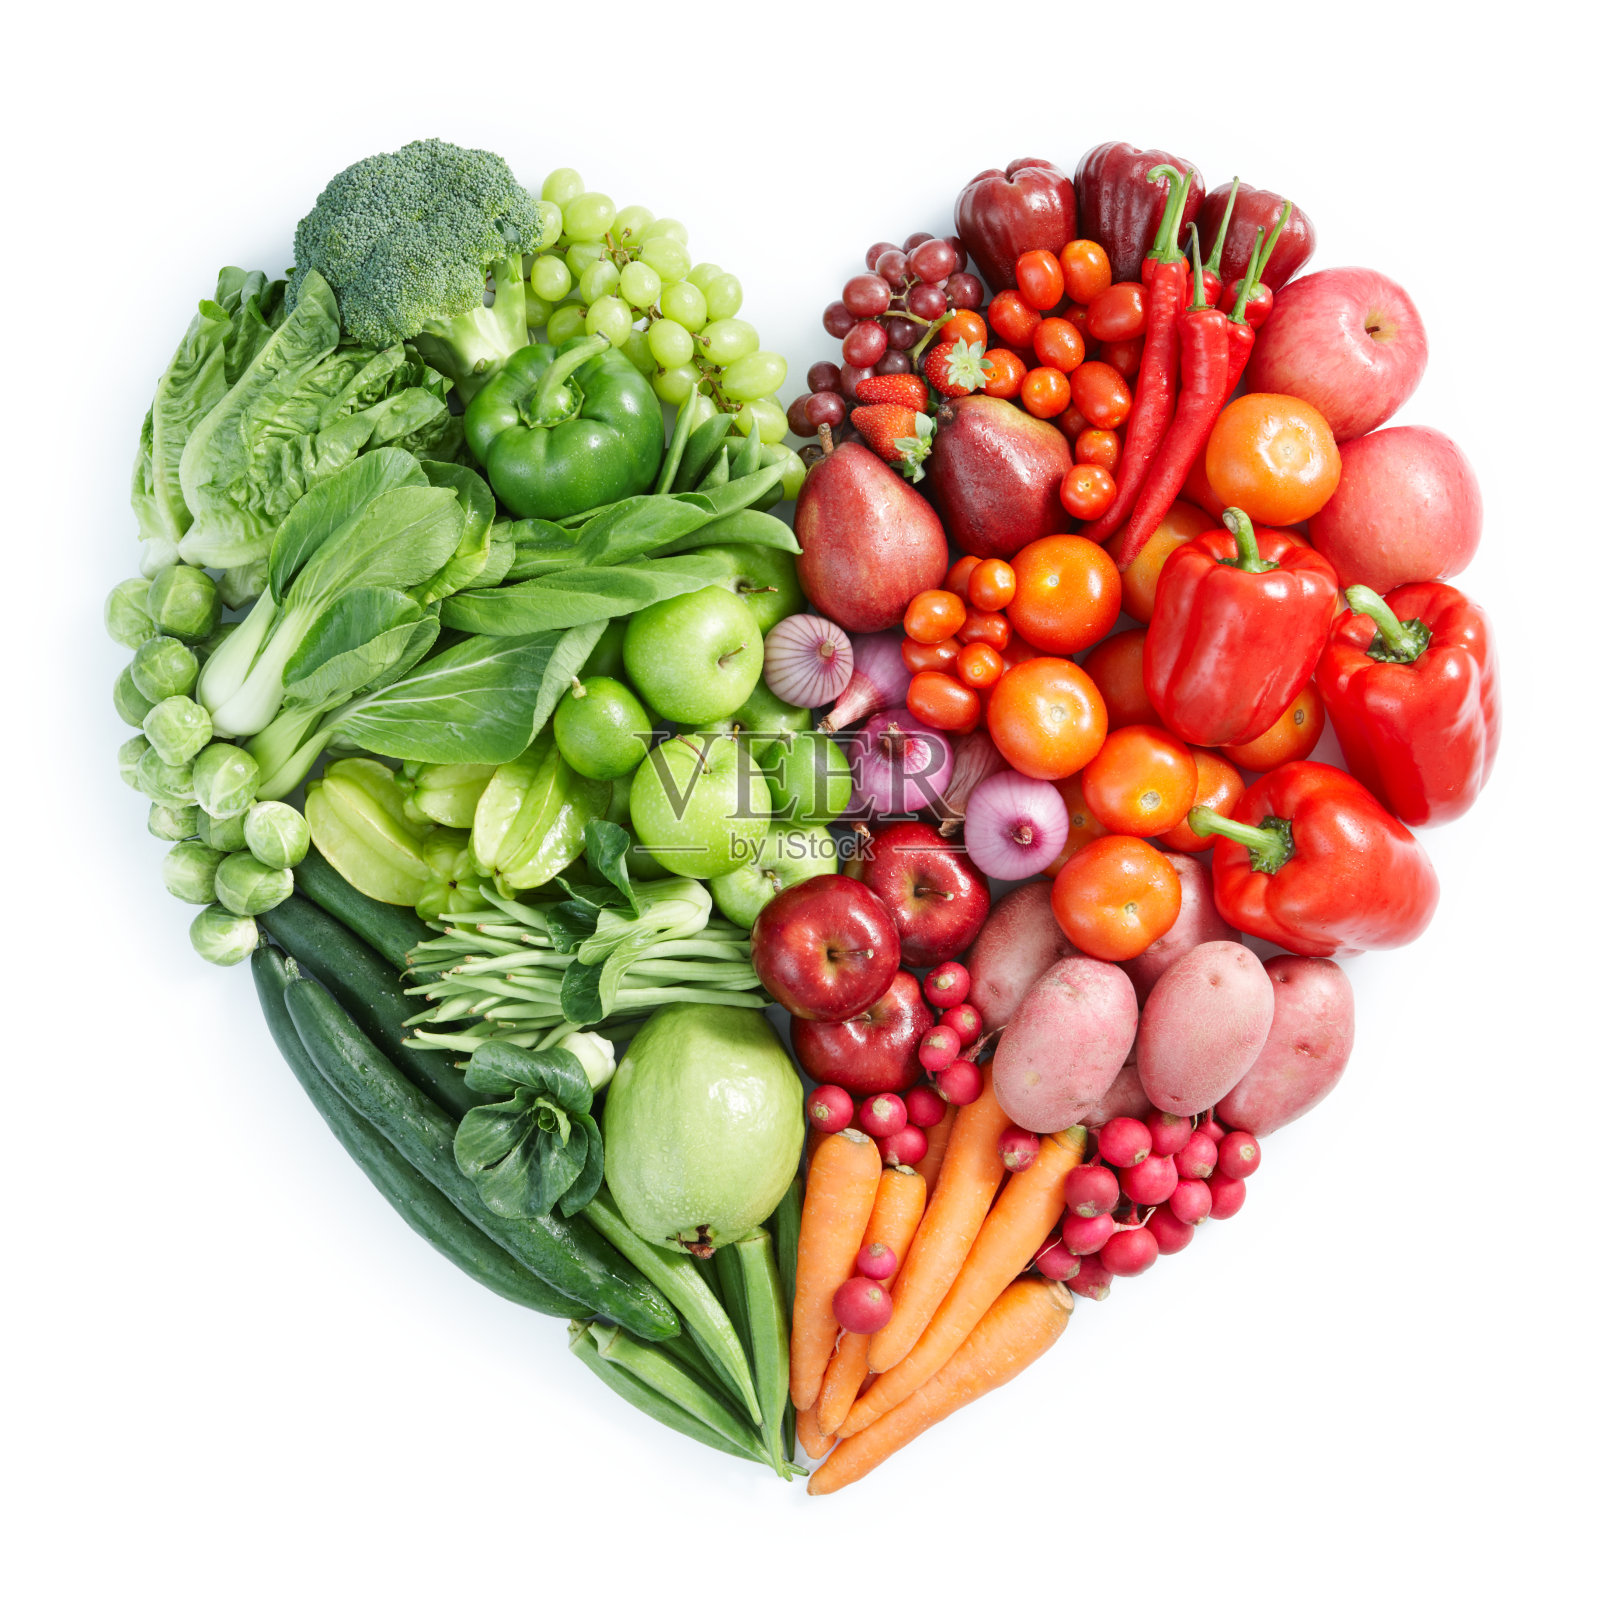 心形陈列着绿色、红色的健康食品照片摄影图片